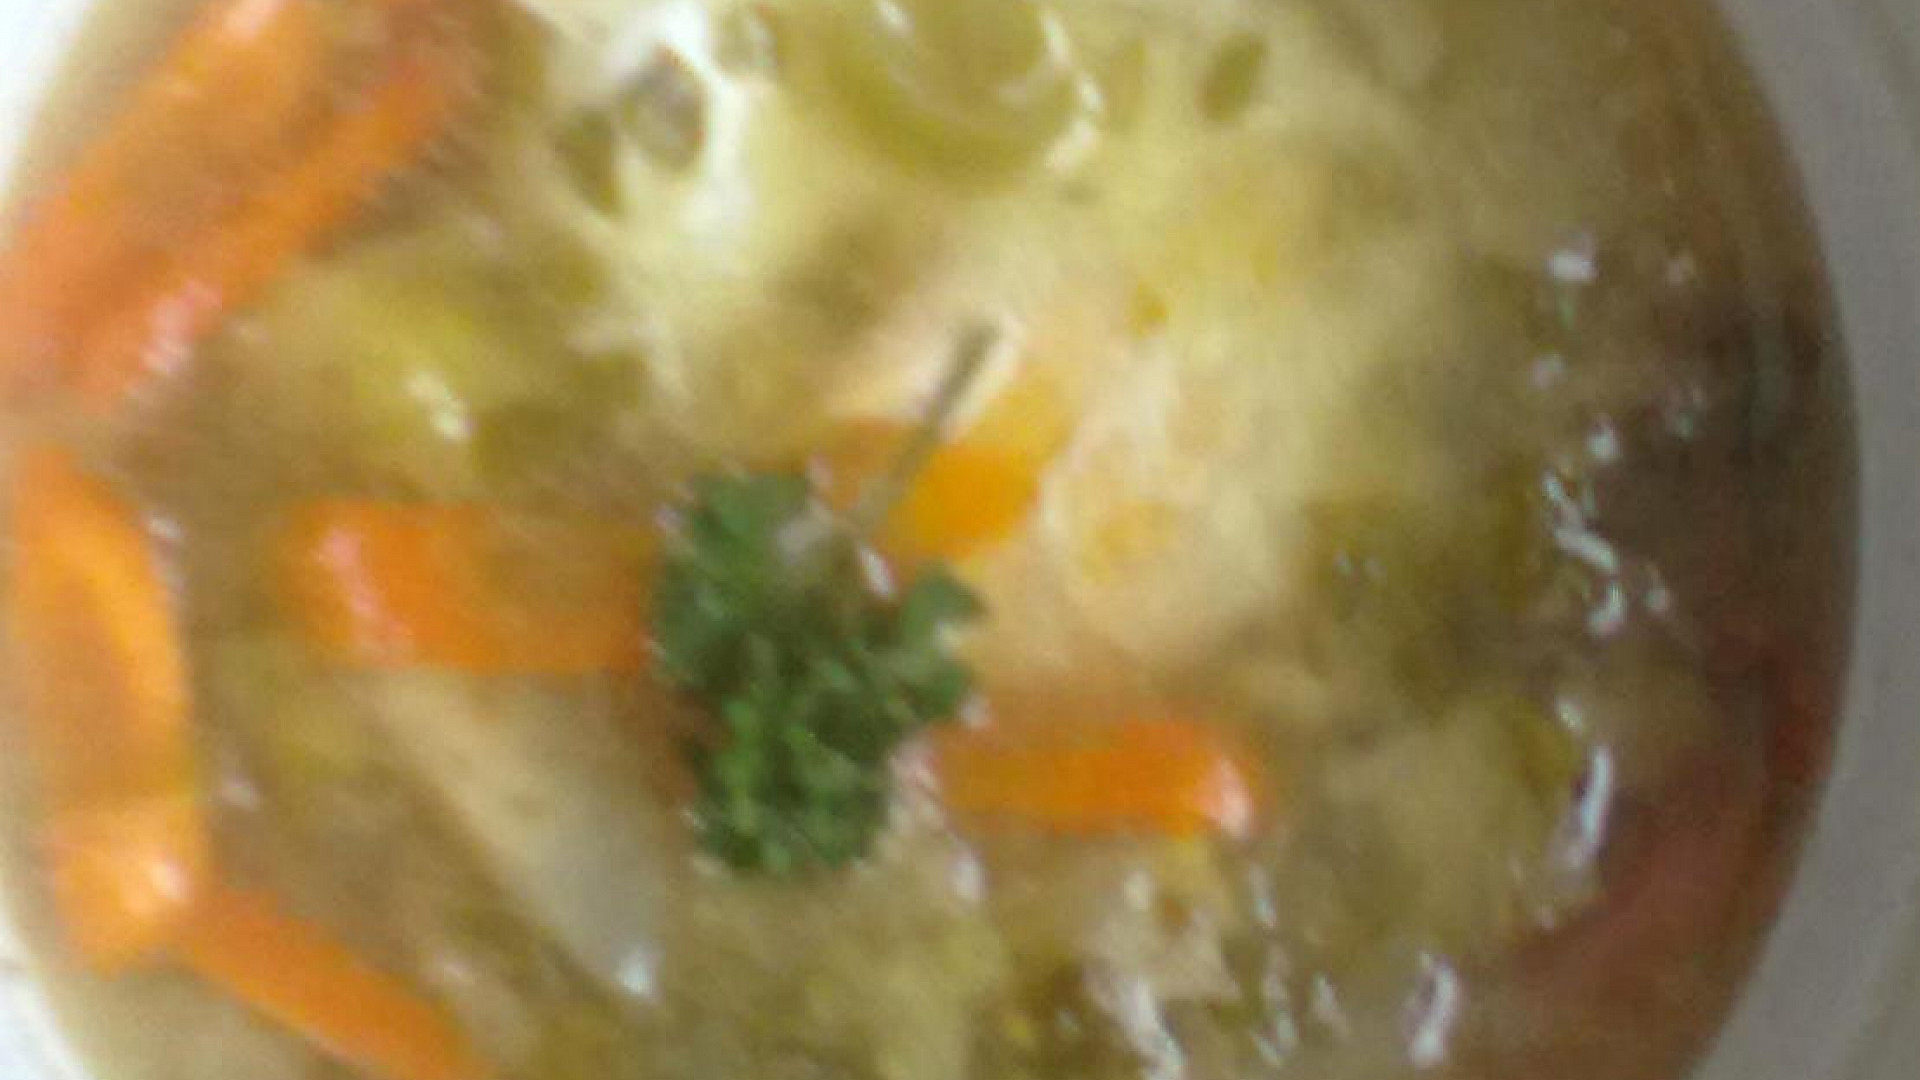 Ovarová zeleninová polévka se ztraceným vejcem dle hajného ze Šlajfu“